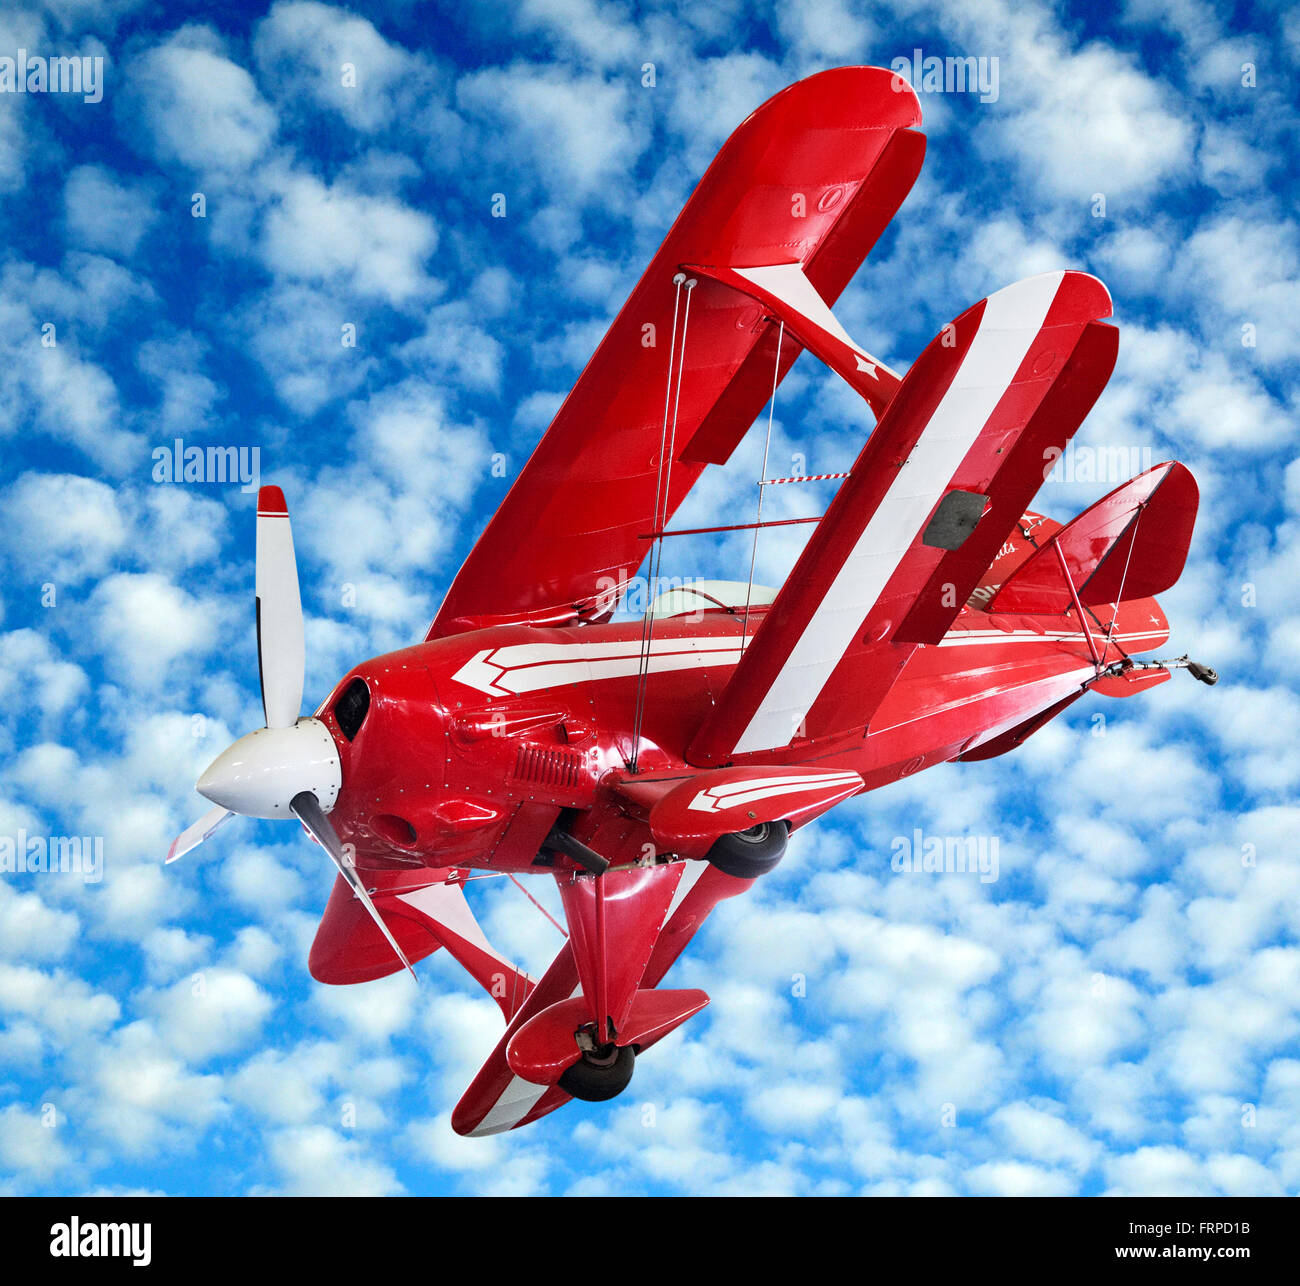 Rosso modello biplano vintage battenti midair e banking contro un nuvoloso cielo blu Foto Stock